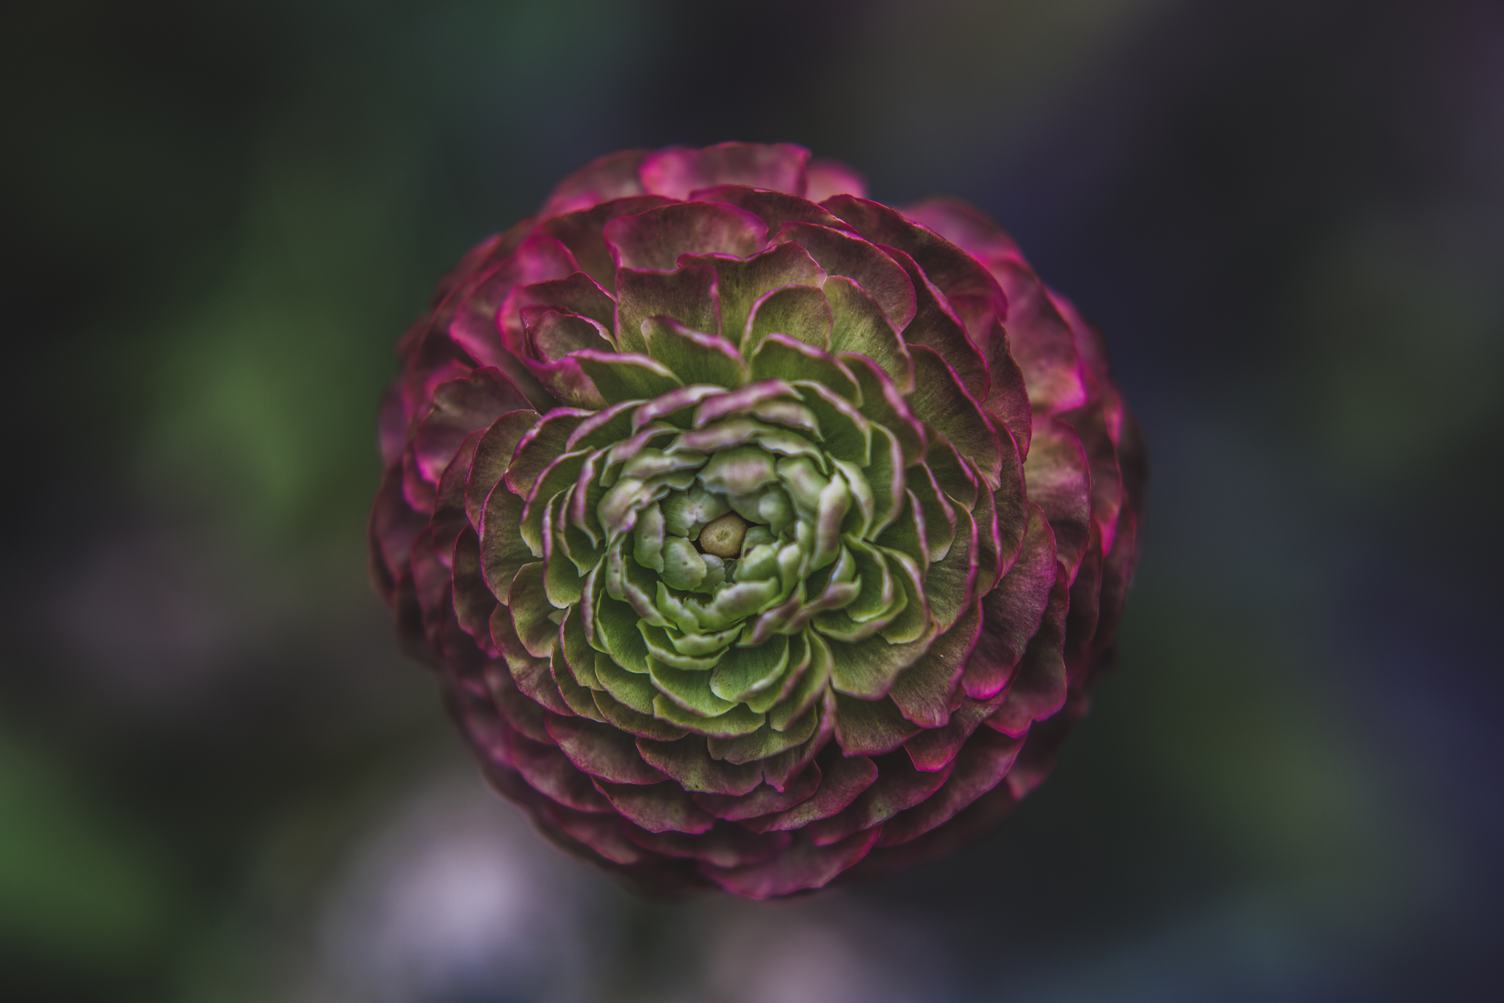 Single Flower on a Blurred Dark Background